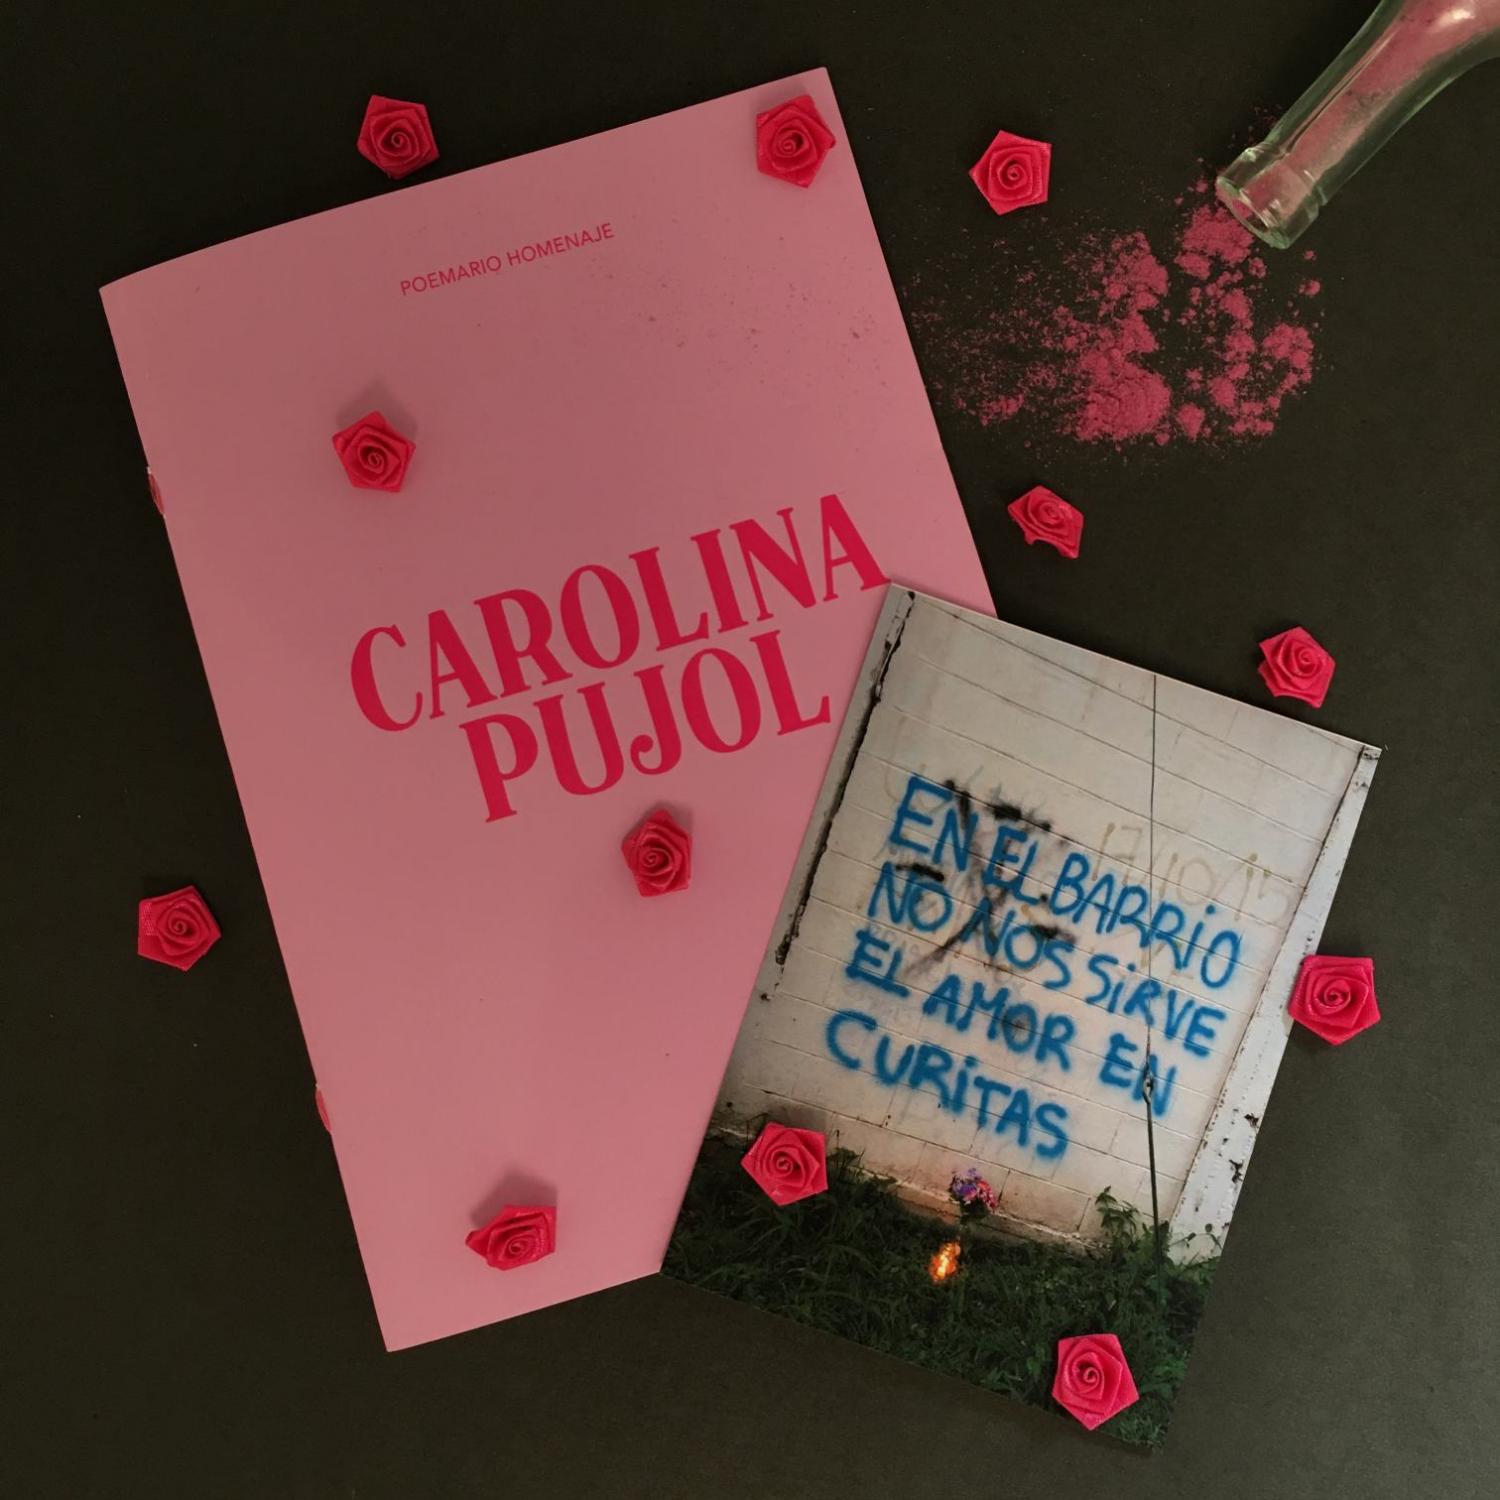 Una editorial tucumana publica los poemas de Carolina Pujol